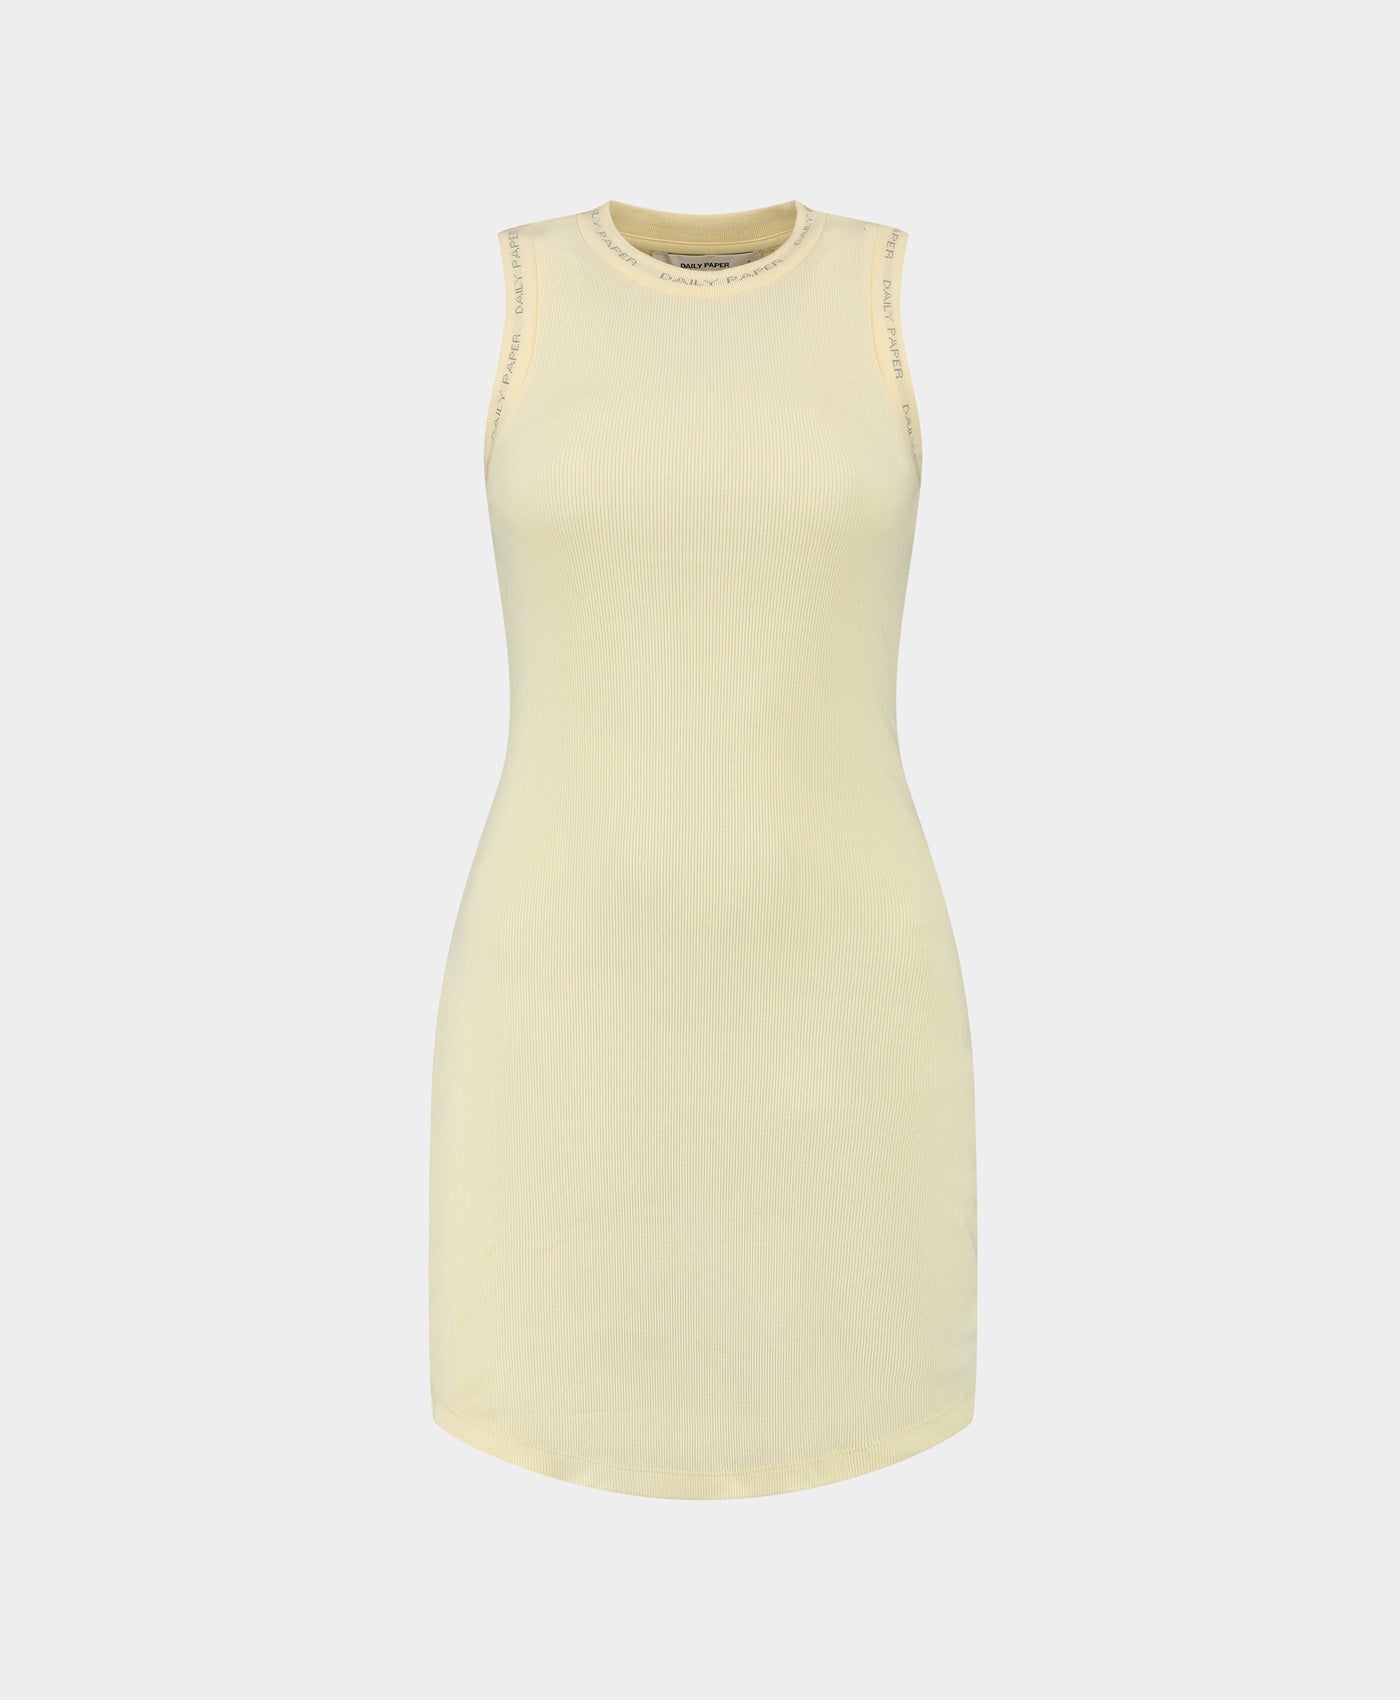 DP - Icing Yellow Erib Tank Dress - Packshot - Front